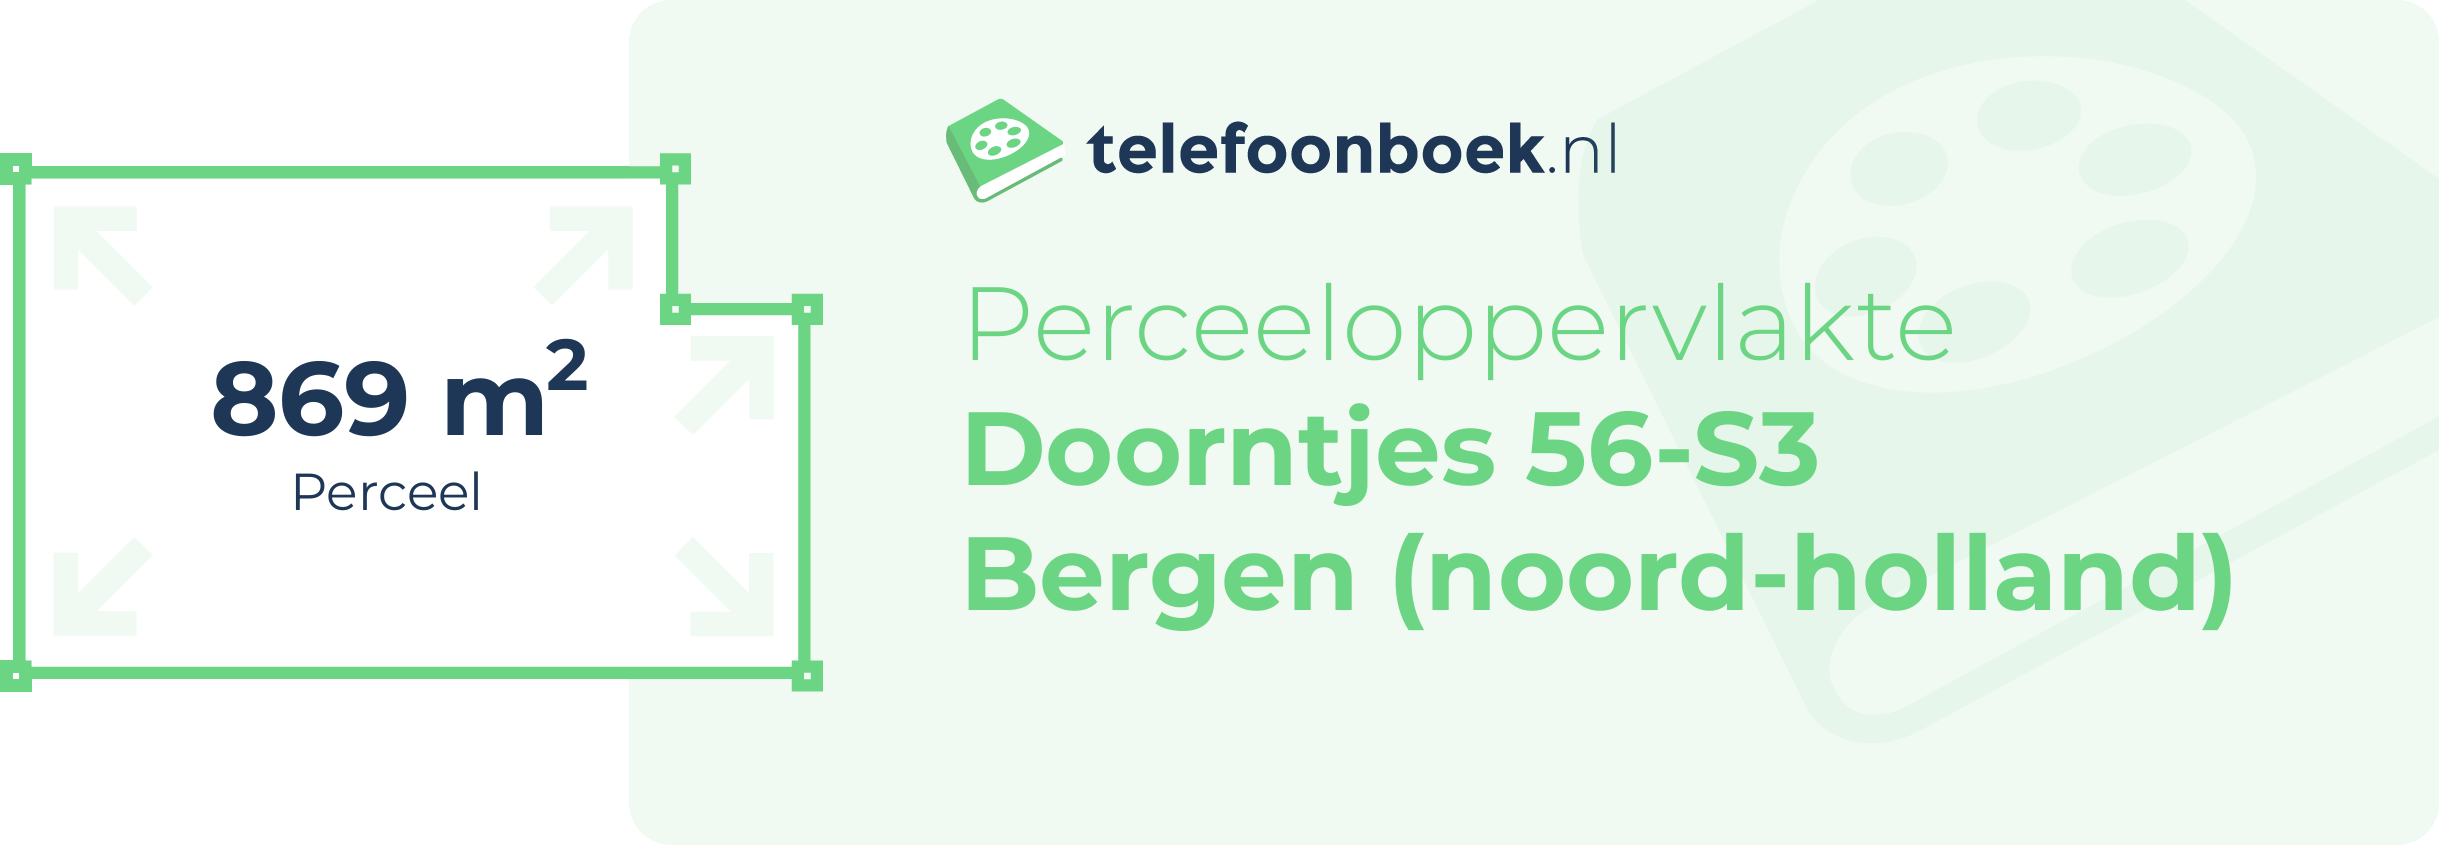 Perceeloppervlakte Doorntjes 56-S3 Bergen (Noord-Holland)